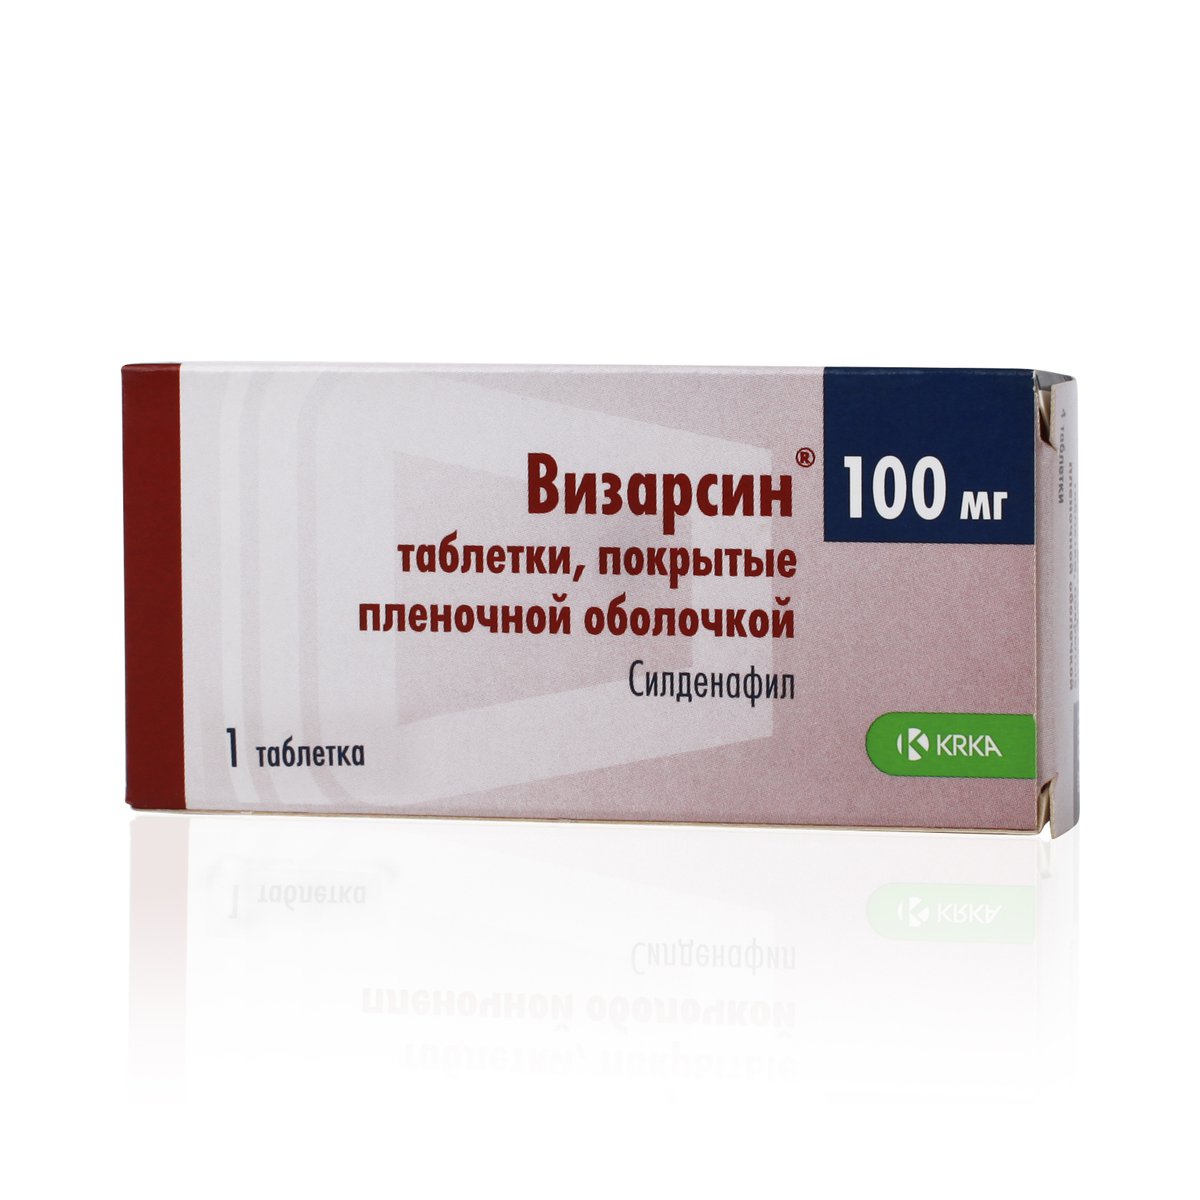 Визарсин (таблетки, 1 шт, 100 мг) - цена,  онлайн  .